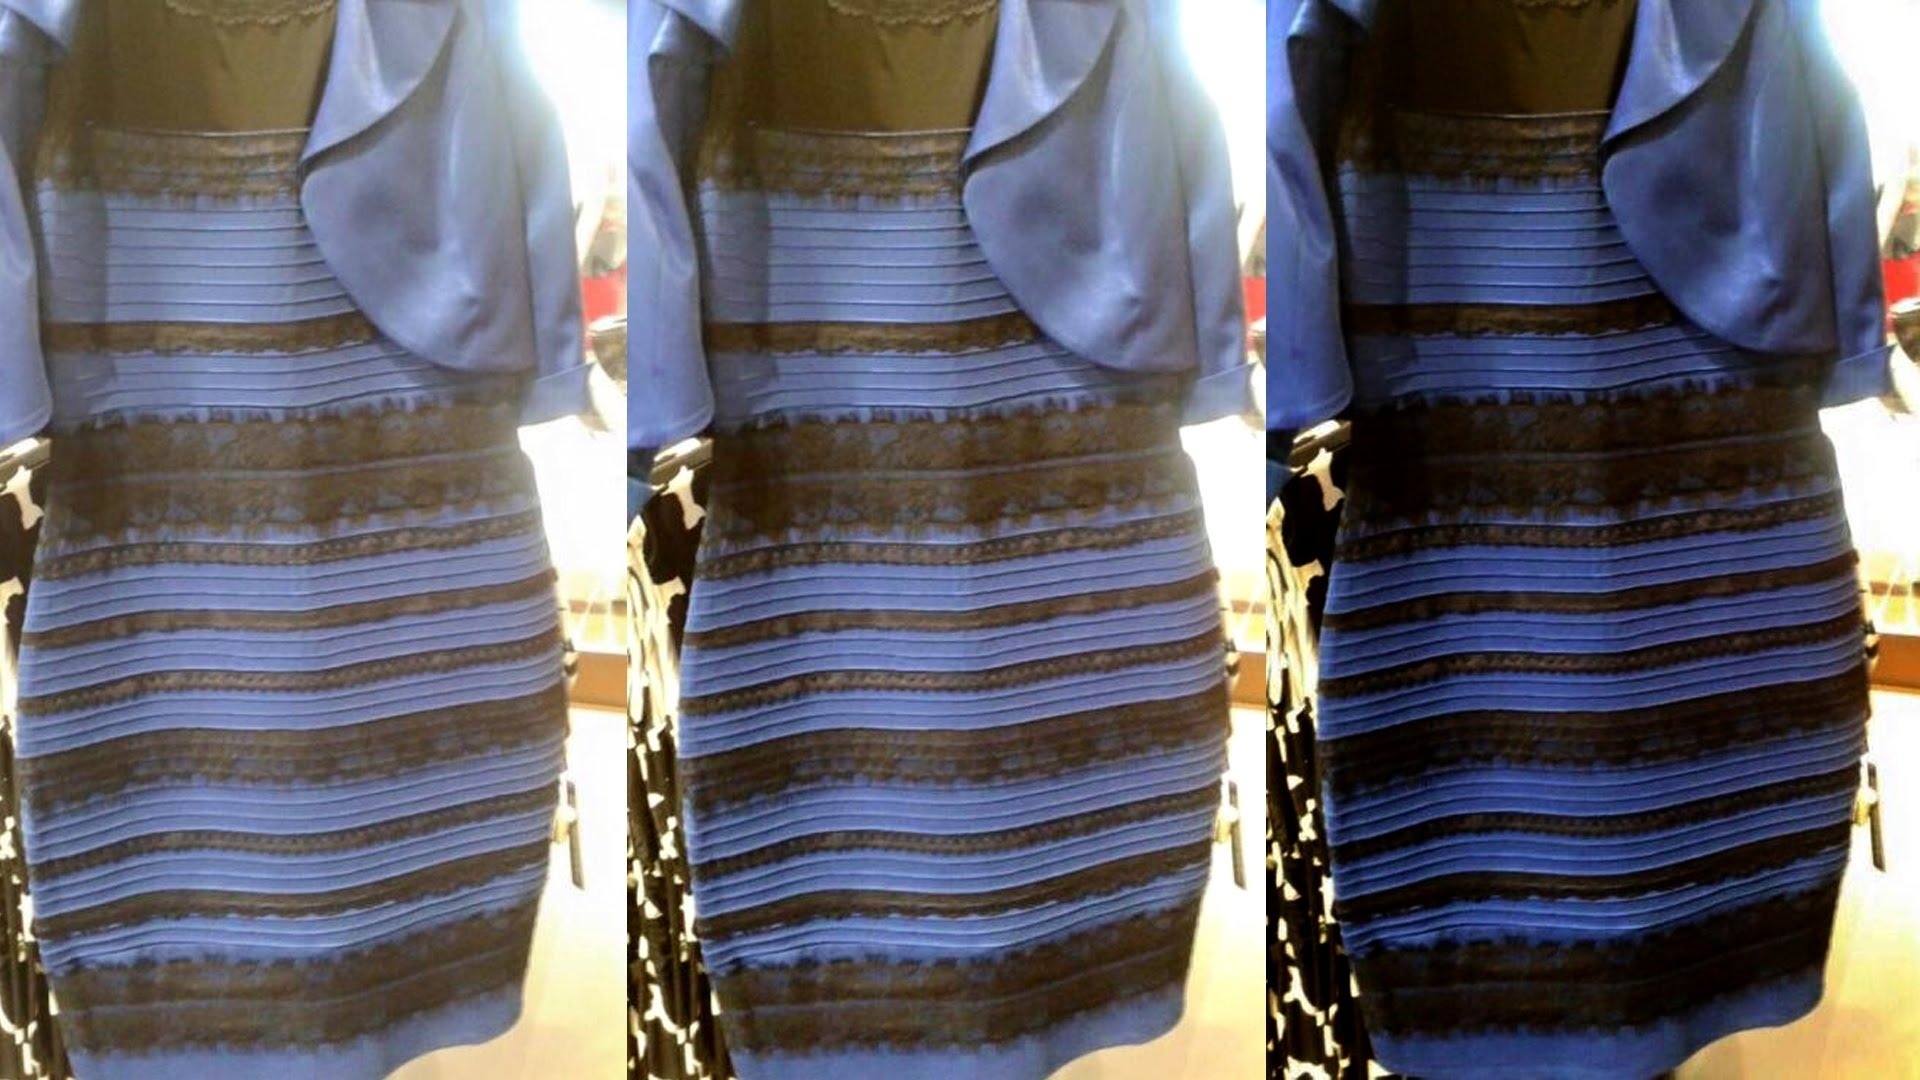 15 Wunderbar Kleid Blau Weiß Design10 Ausgezeichnet Kleid Blau Weiß Boutique